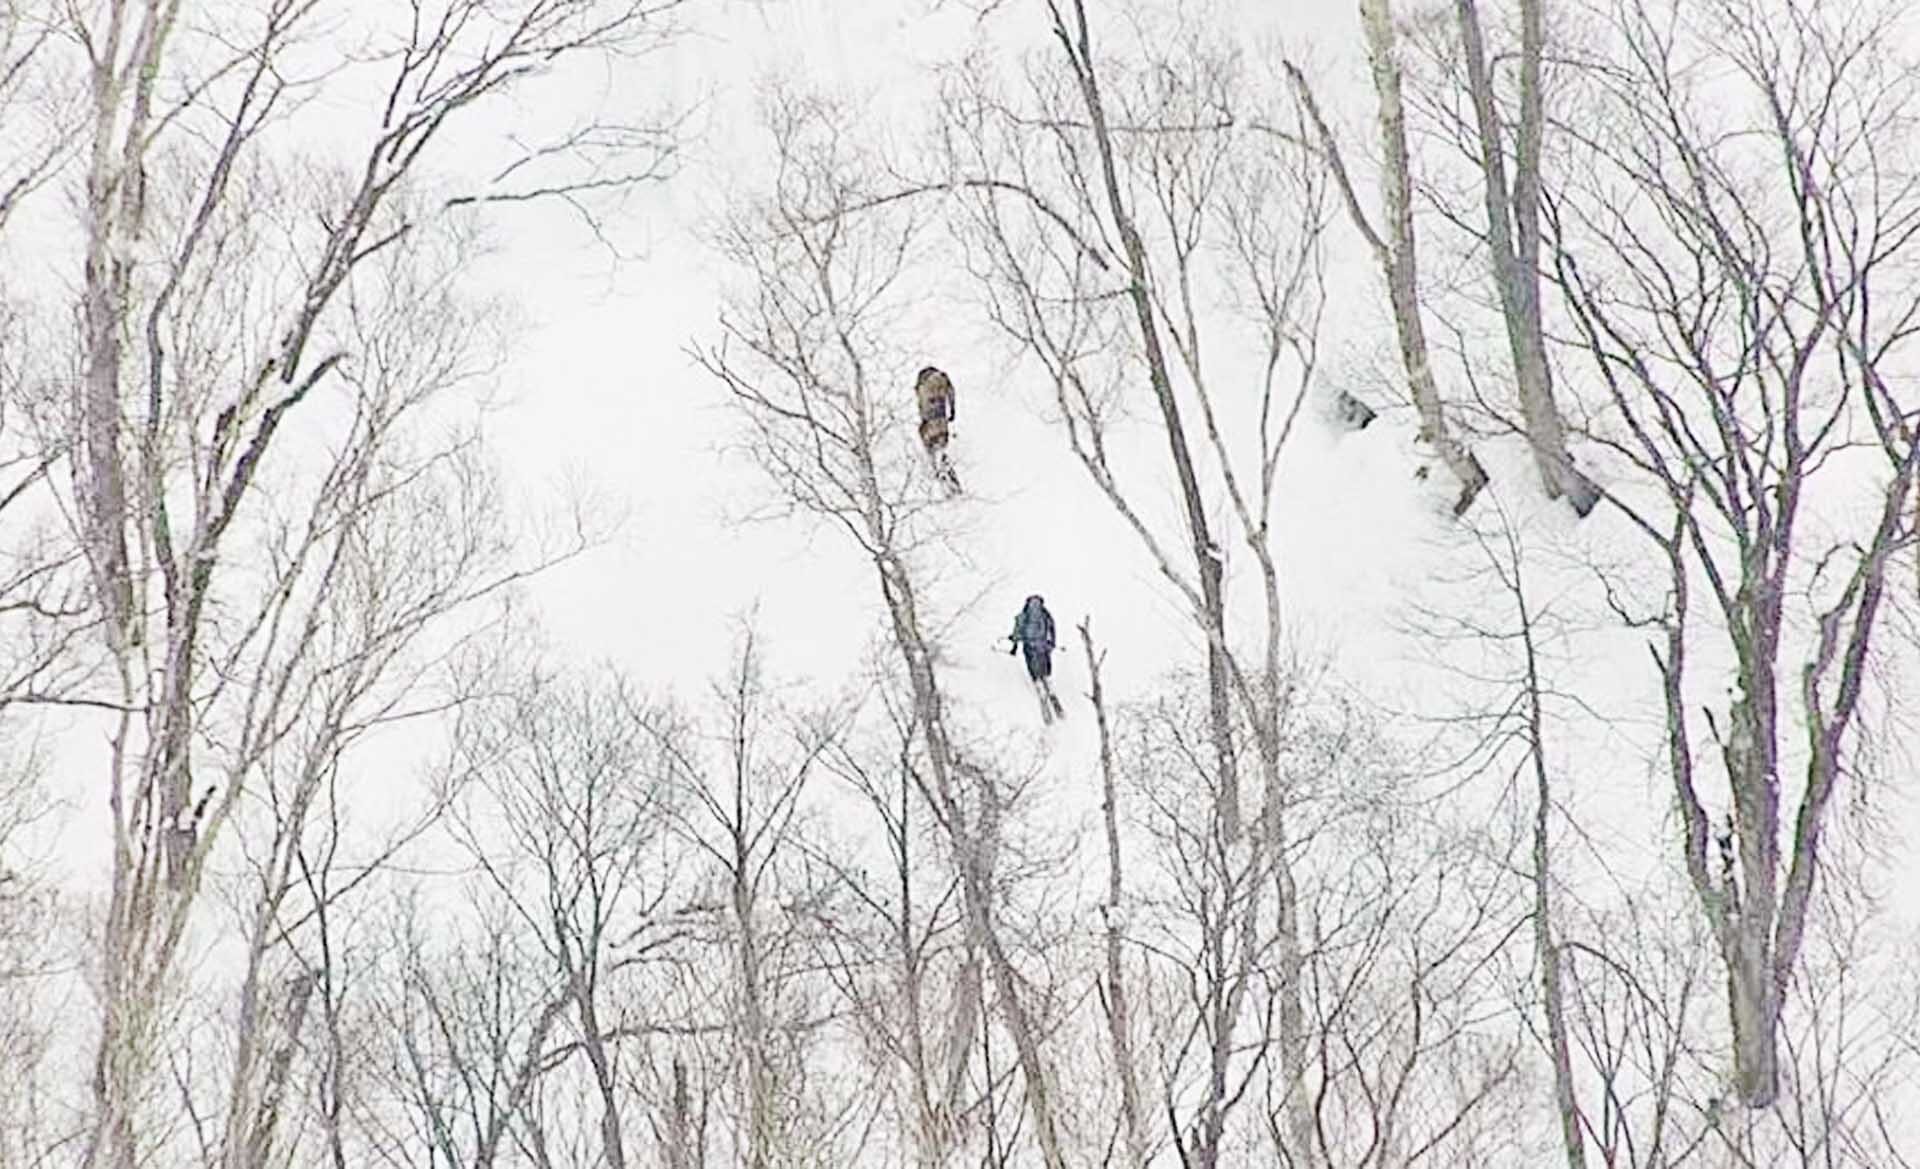 สลดนักท่องเที่ยวดับ 2 ศพ เซ่น “หิมะถล่ม” ขณะเล่นสกีบน “ภูเขาฟูจิแห่งฮอกไกโด”